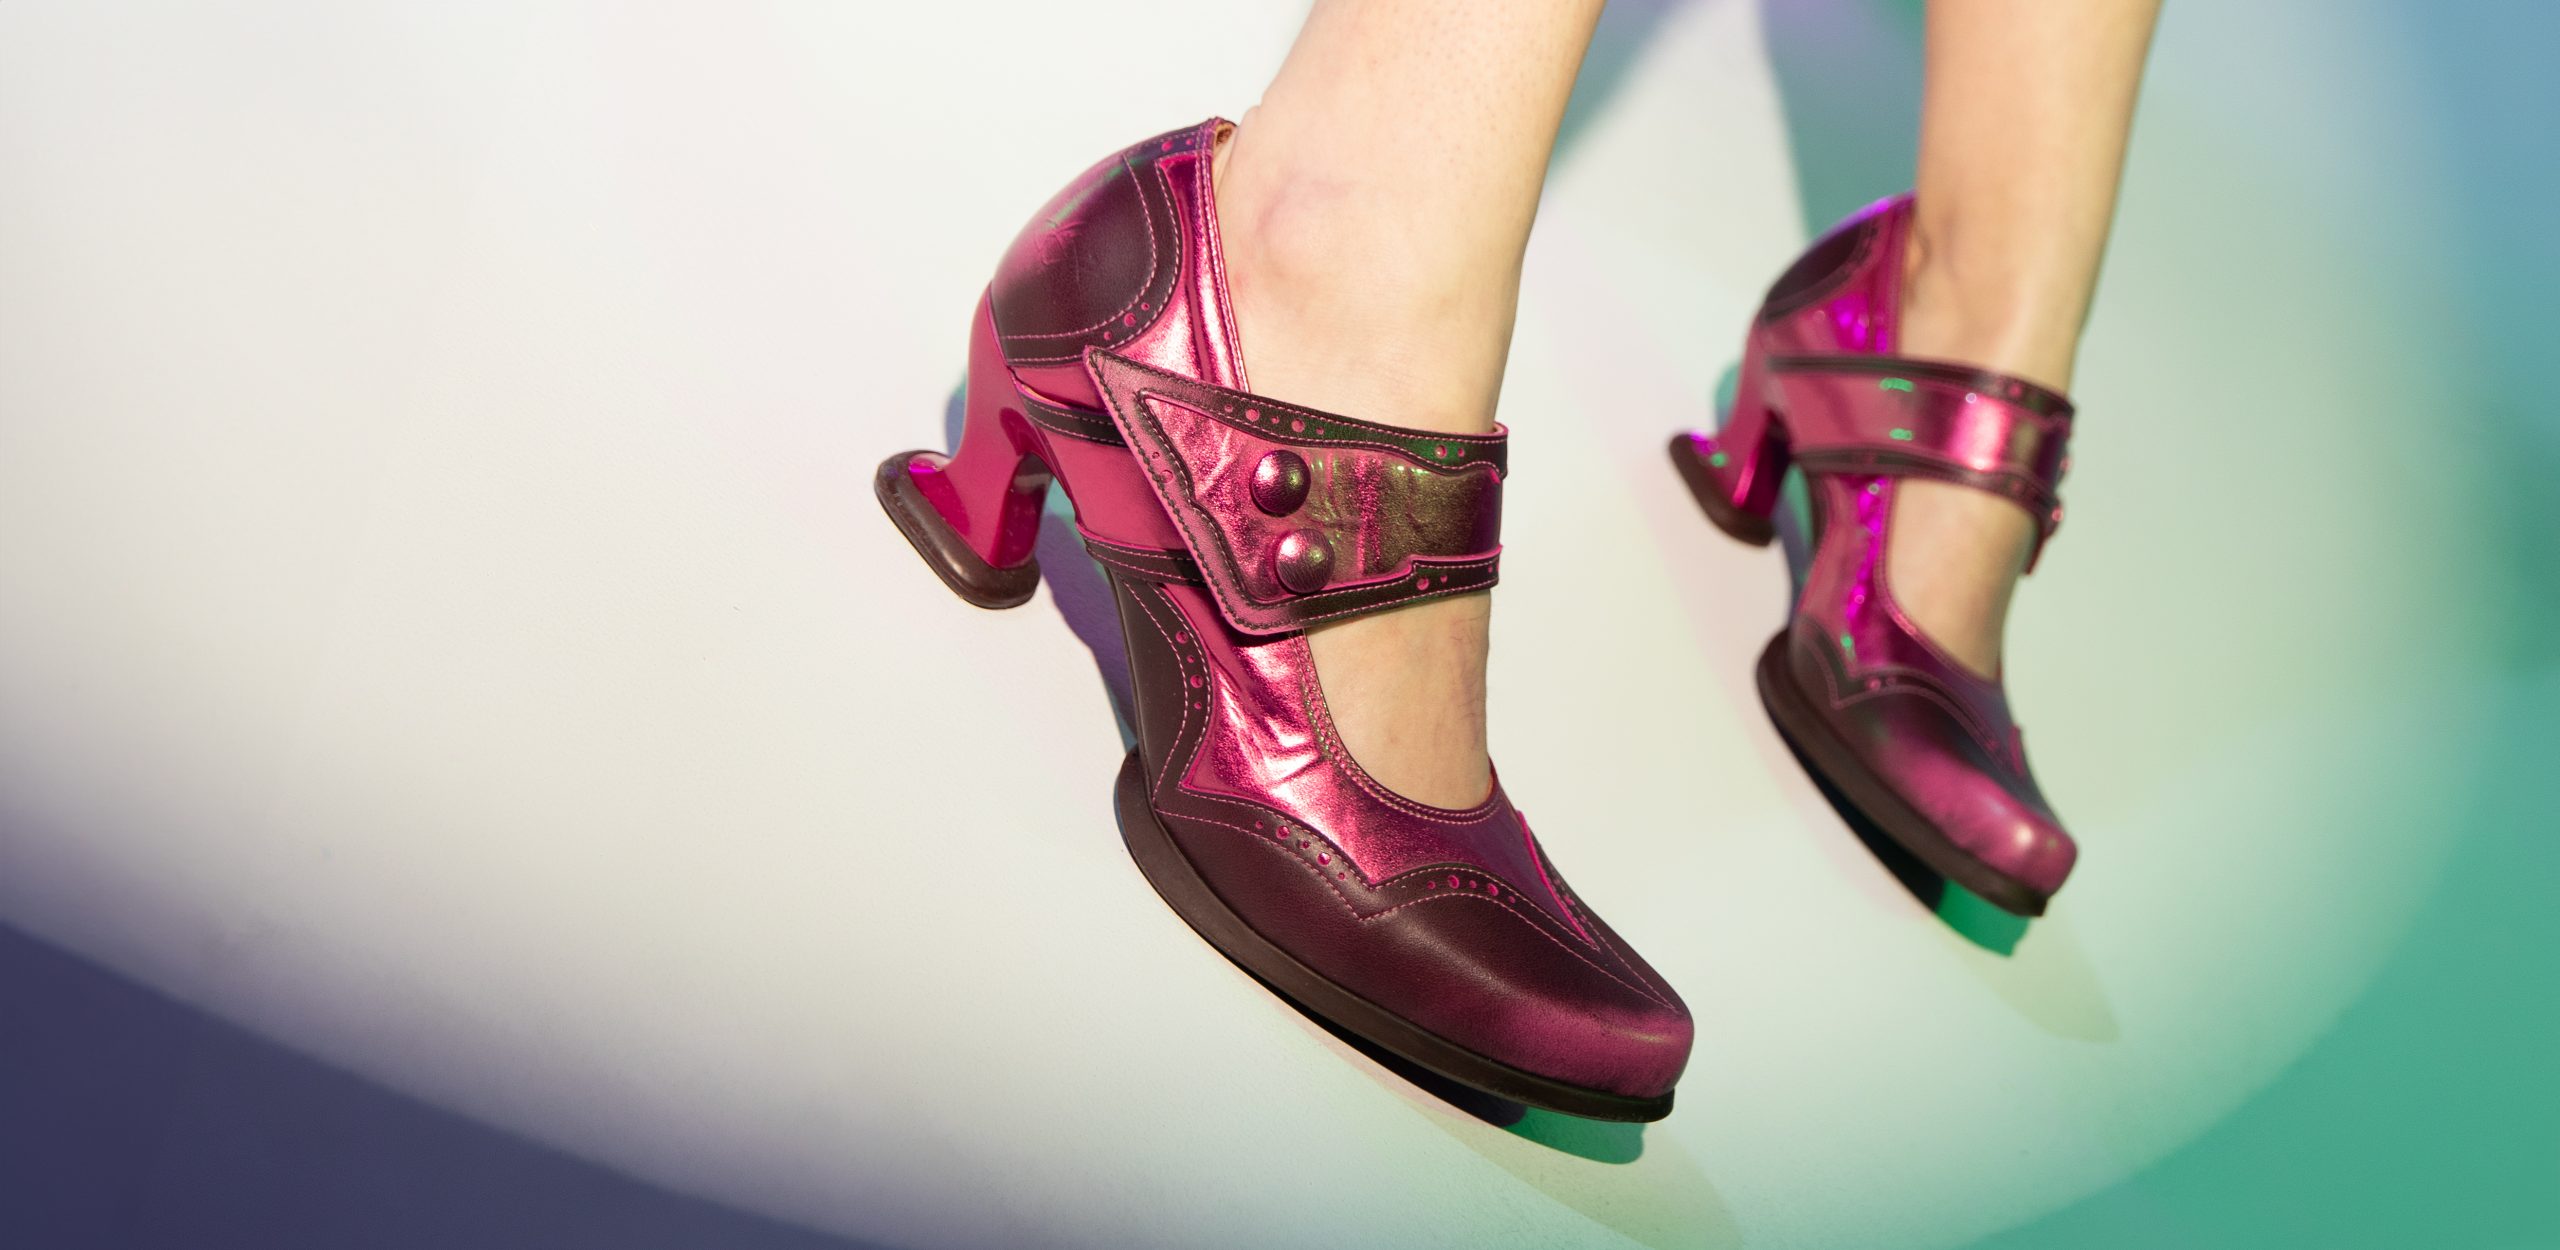 Les pieds d'une femme dans une paire de chaussures roses à Accueil.